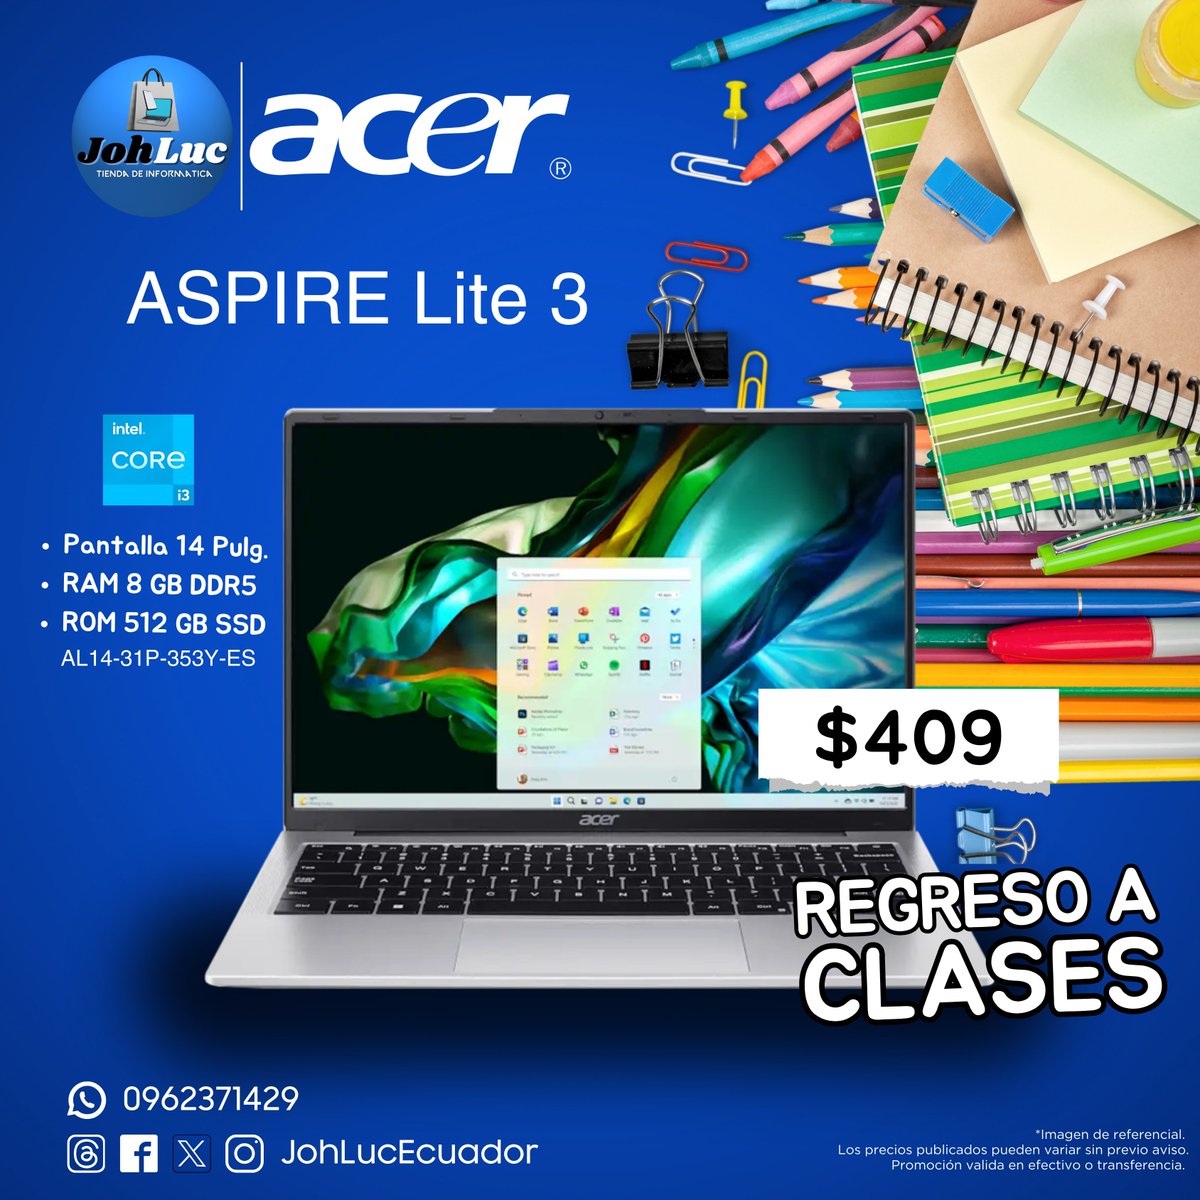 ¡Bienvenido de nuevo a clases! Acer está aquí para hacer tu regreso más emocionante y productivo. 

Prepárate para alcanzar nuevas alturas este año escolar con Acer. 💻📒📖

⚠ Promoción válida por el mes de Abril.**

#JohLuc #acer #RegresoaClases #Ecuador